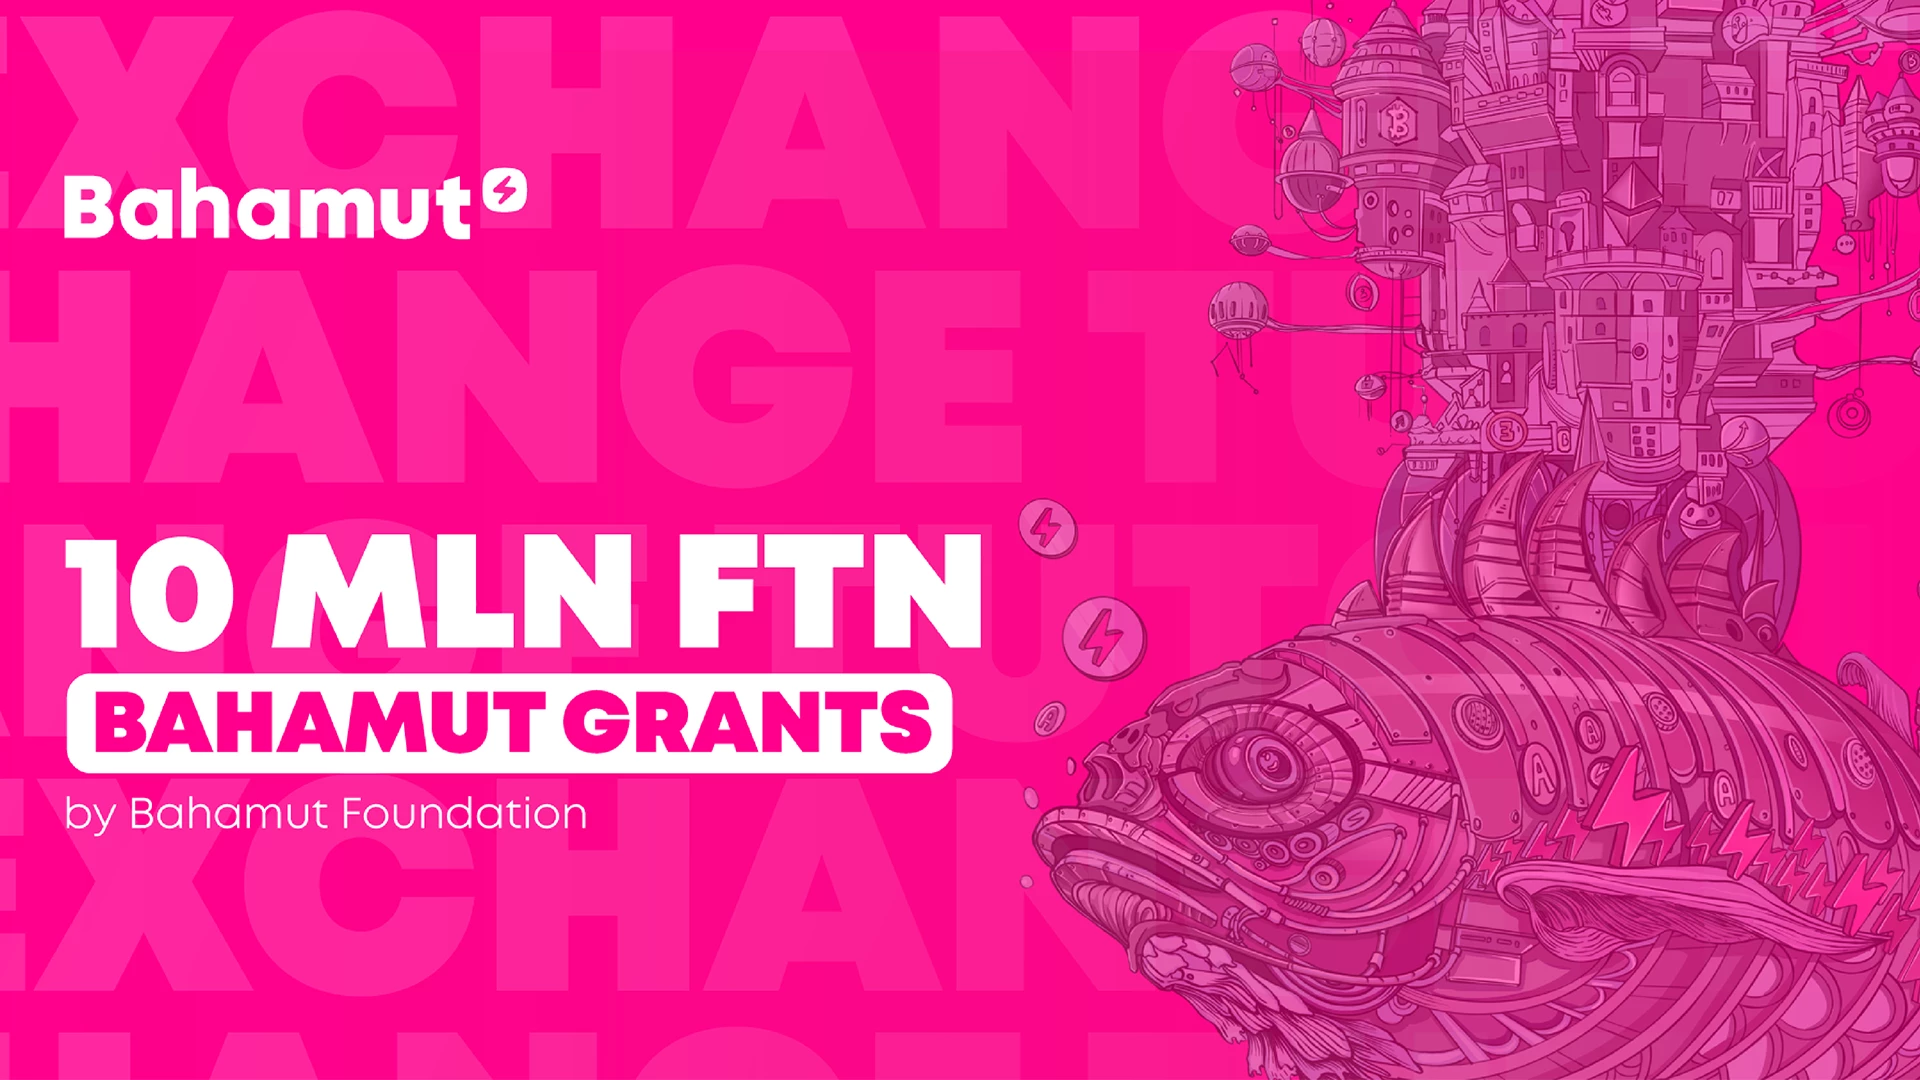 La Fundación Bahamut lanza el programa Bahamut Grants con un fondo de 10 millones de $FTN.